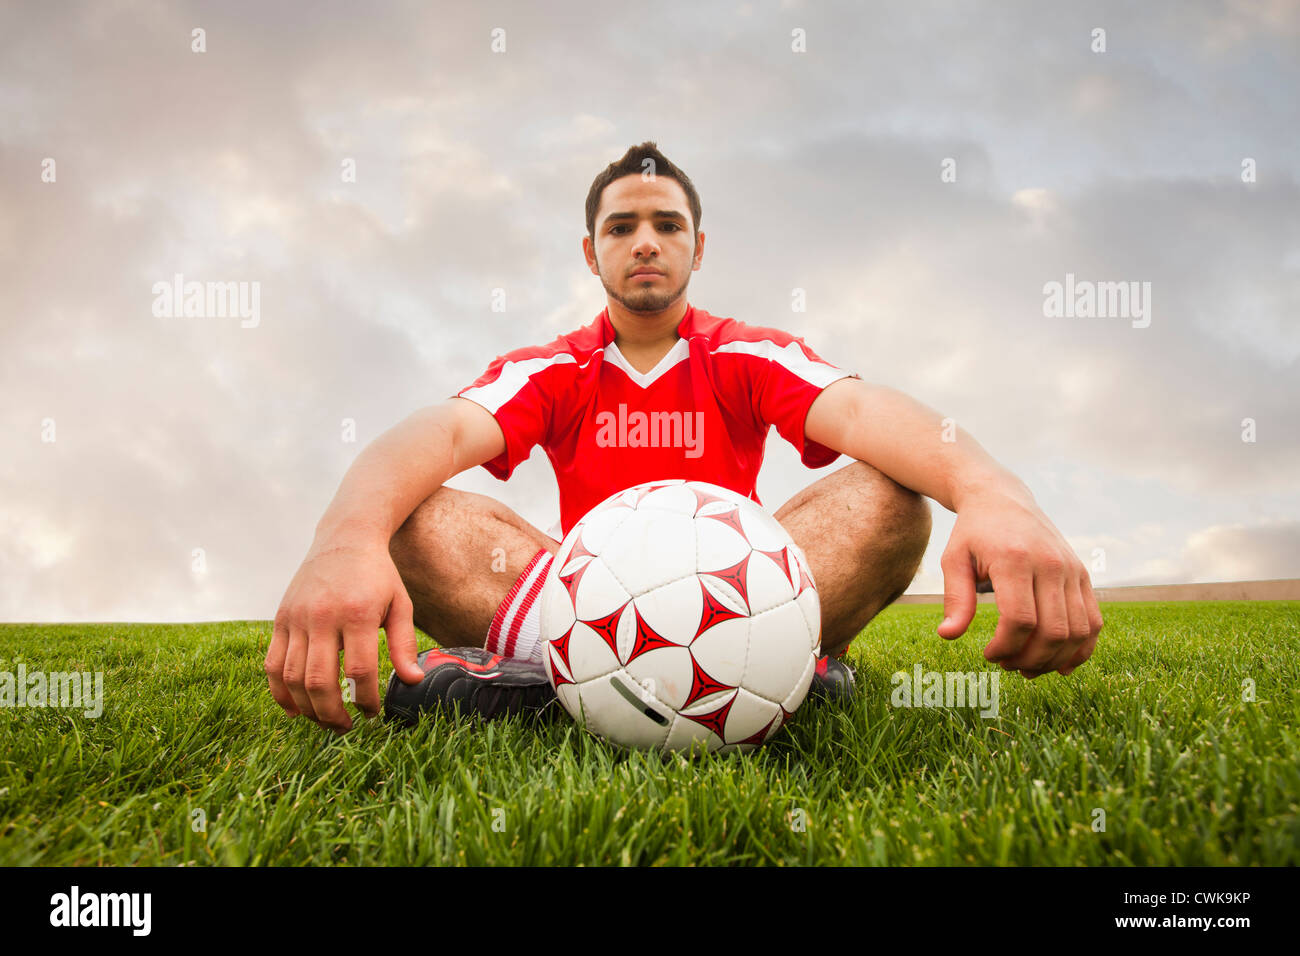 Hispanos de fútbol jugador sentado con bola Foto de stock